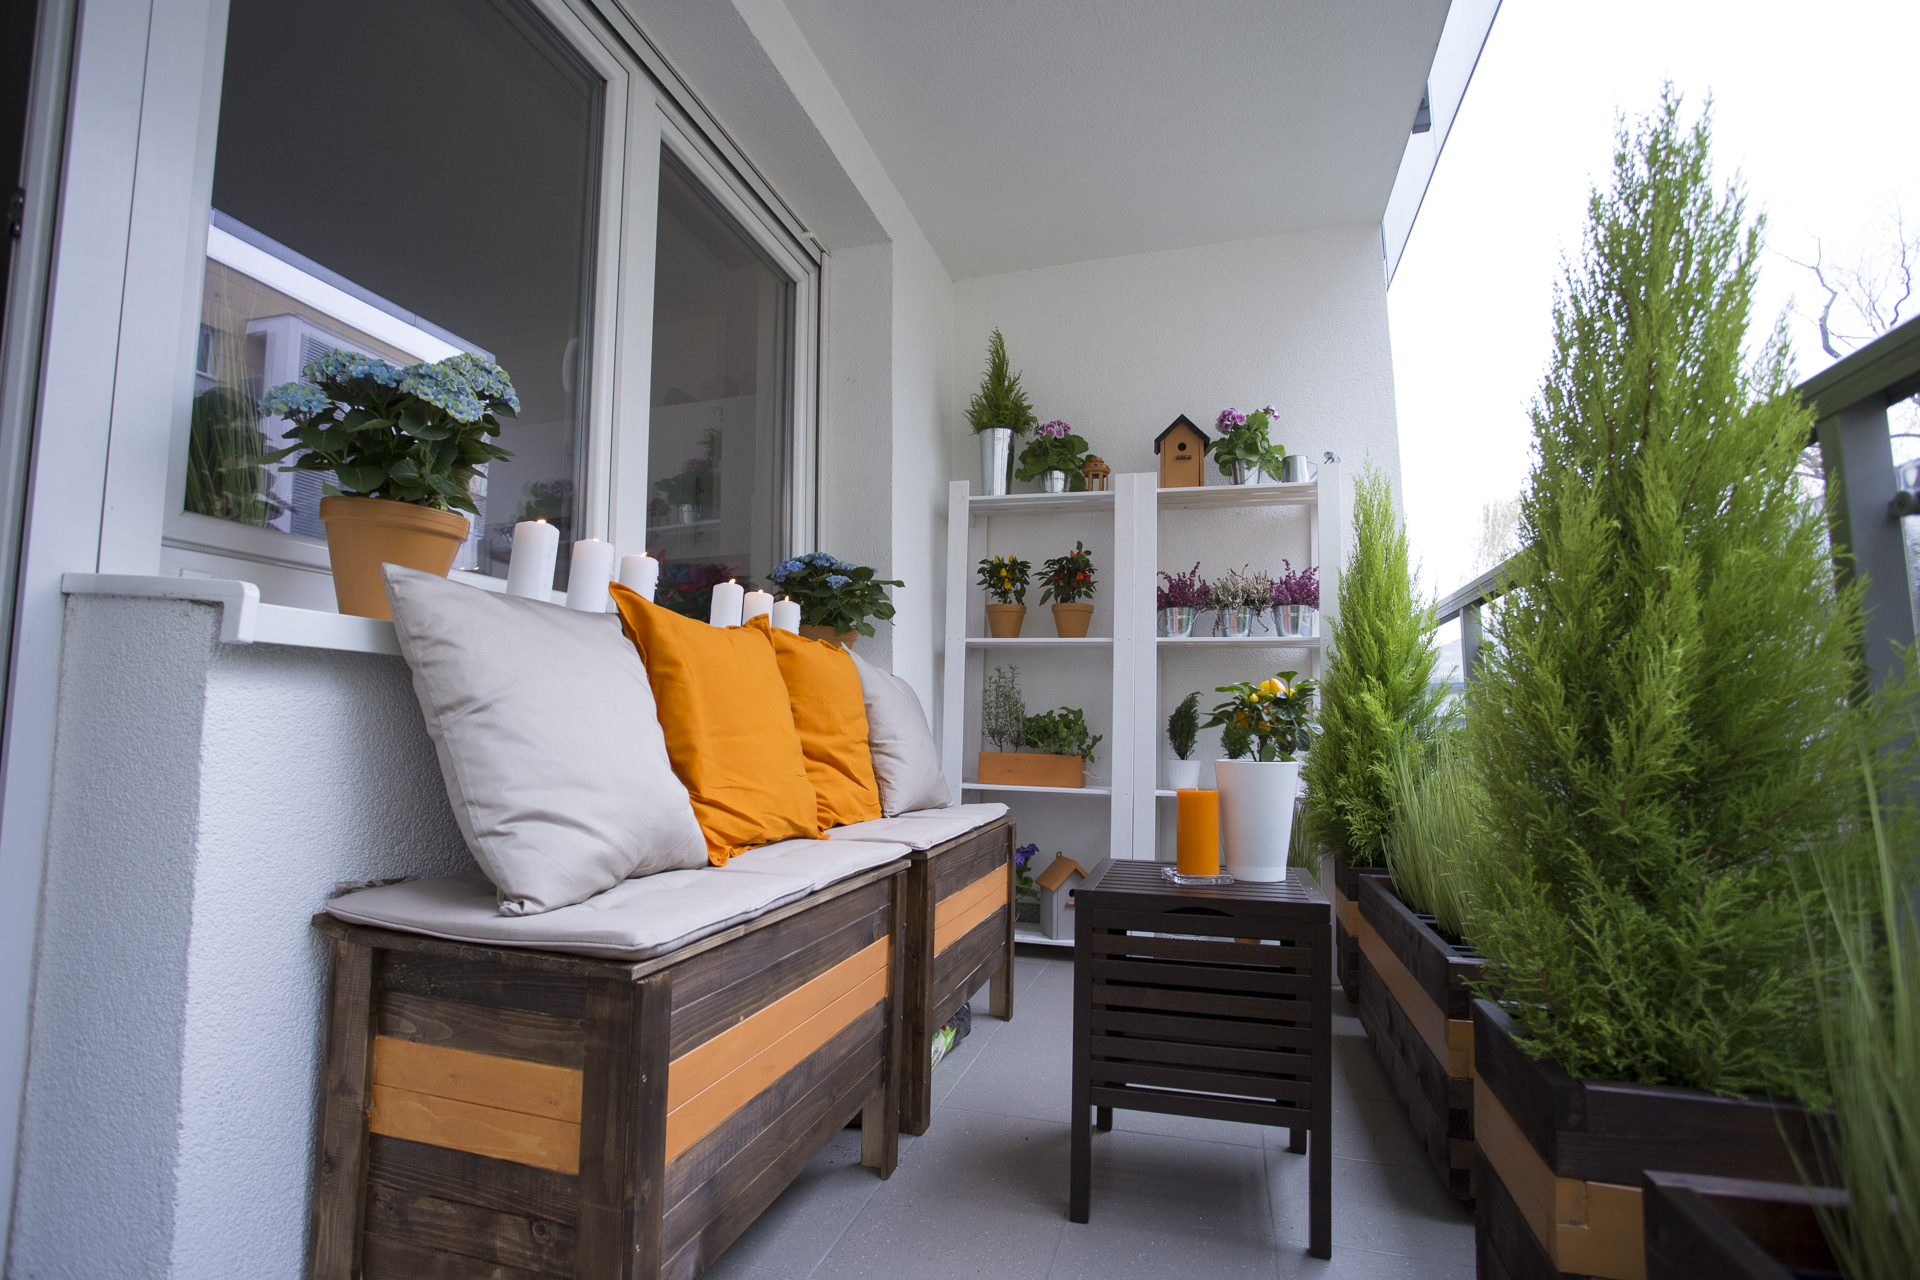 Drewniana skrzynia – jak zrobić skrzynię na balkon?